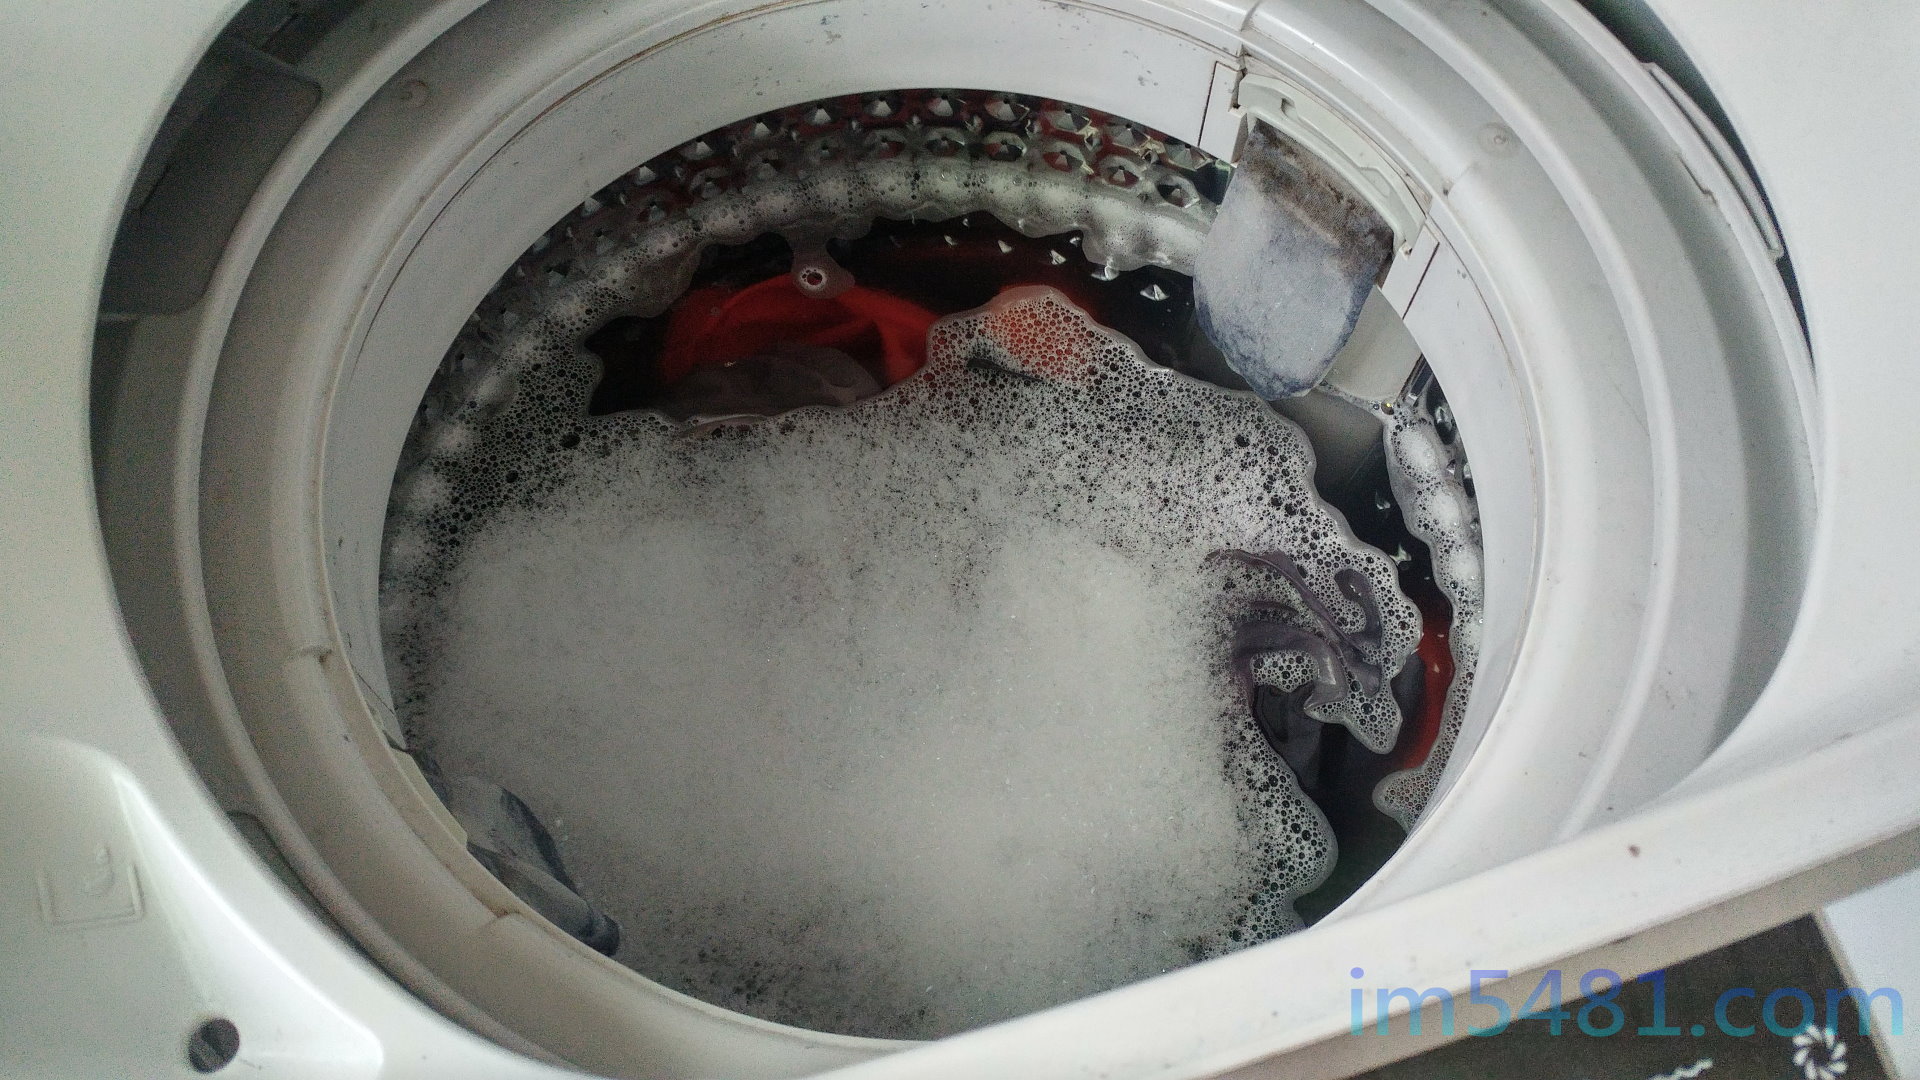 直立式洗衣機-可以在洗衣之前，在尚未放入衣服跟進水時，先加入過碳酸鈉於洗衣槽底部